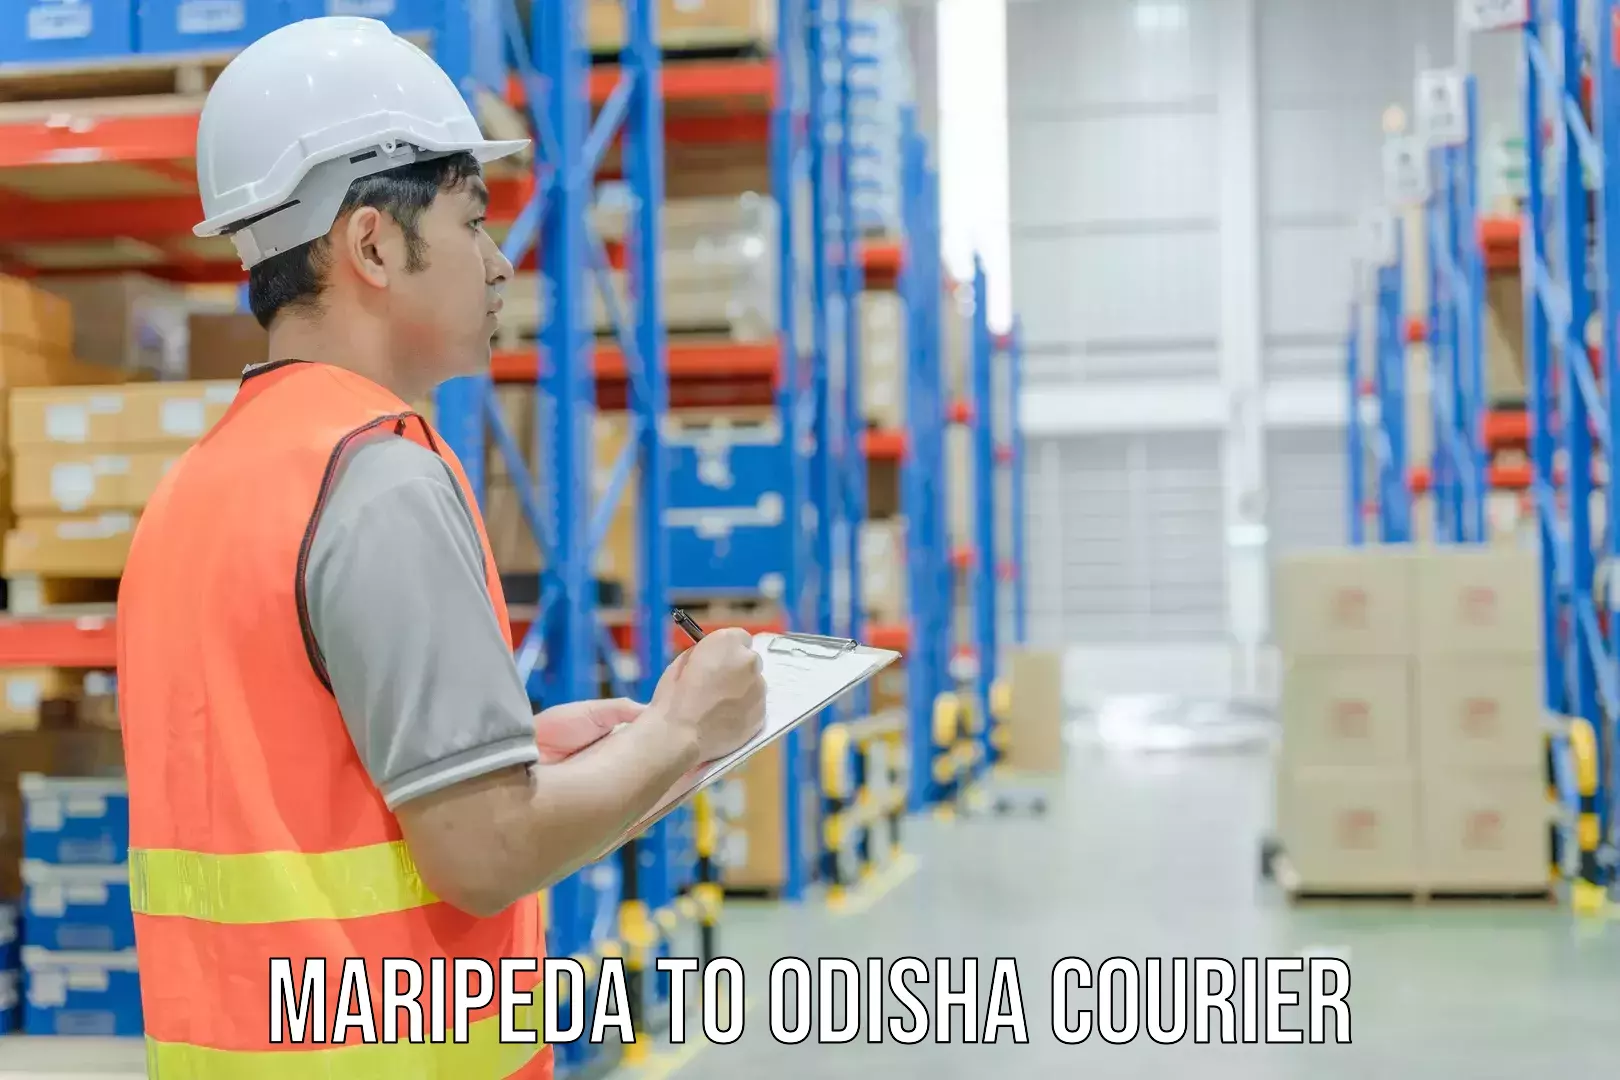 Courier service comparison in Maripeda to Pipili